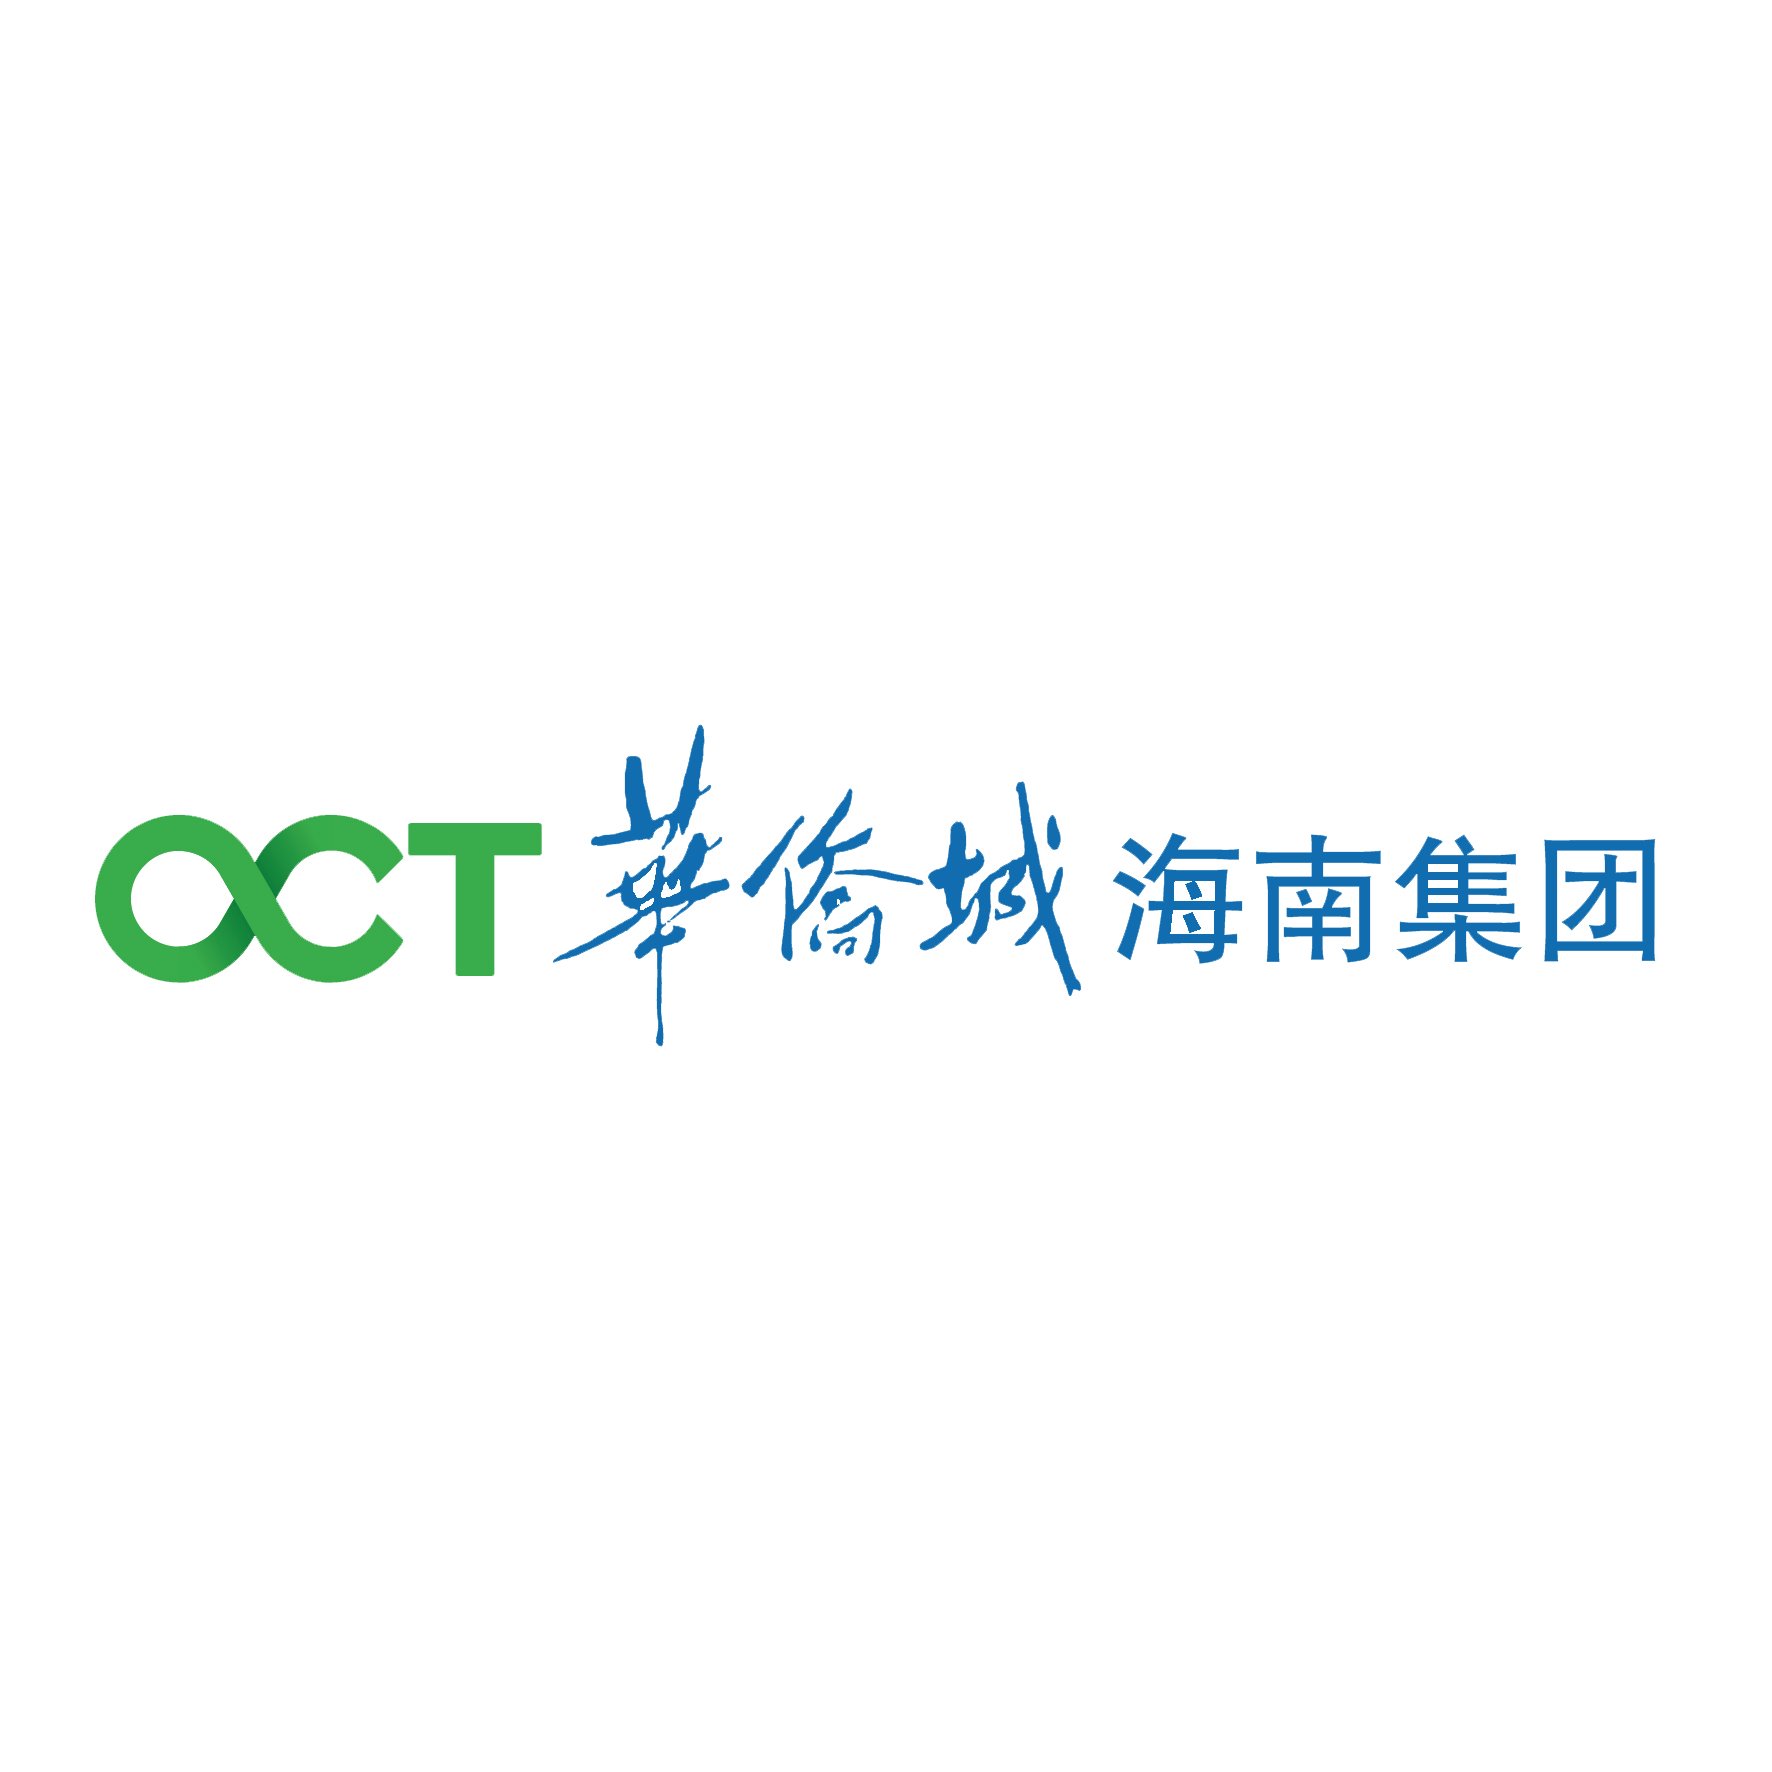 深圳华侨城logo图片